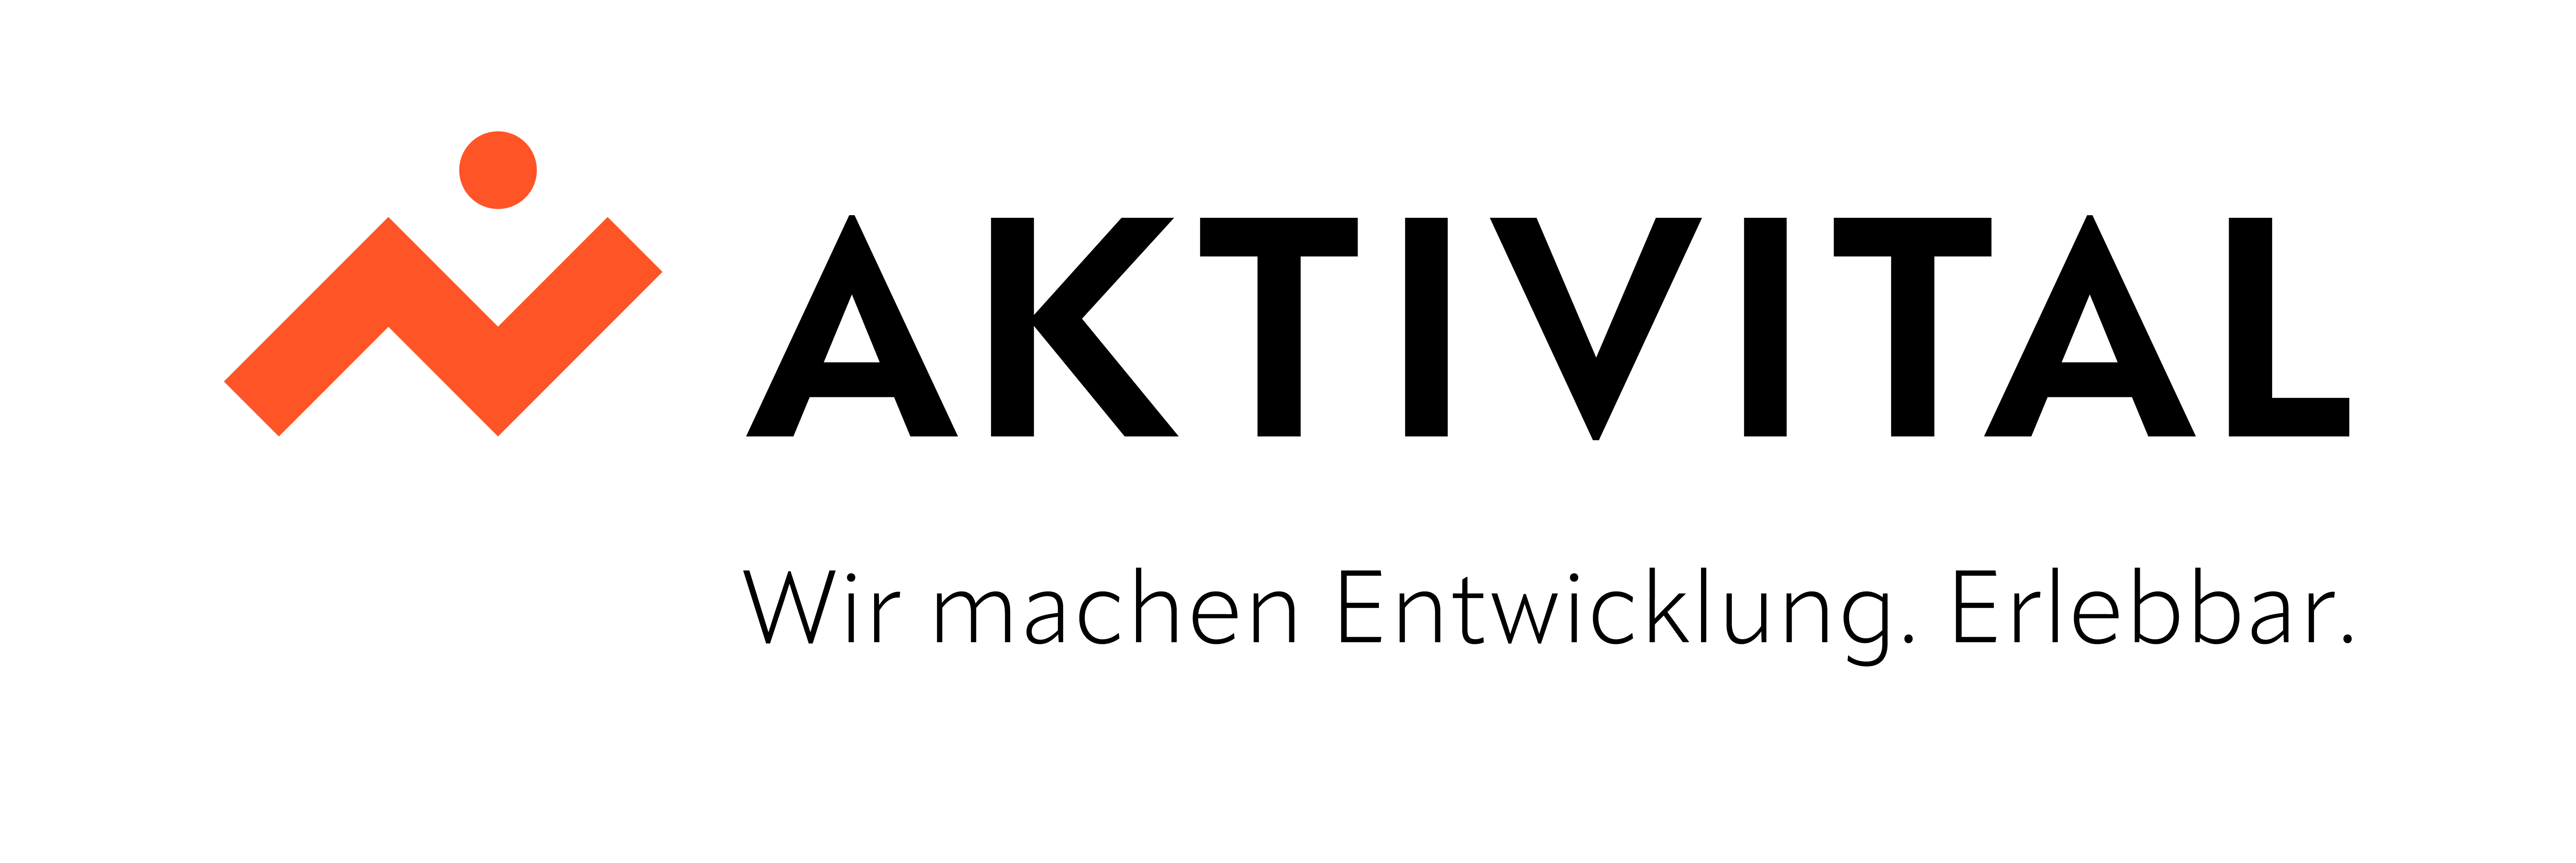 Aktivital Logo